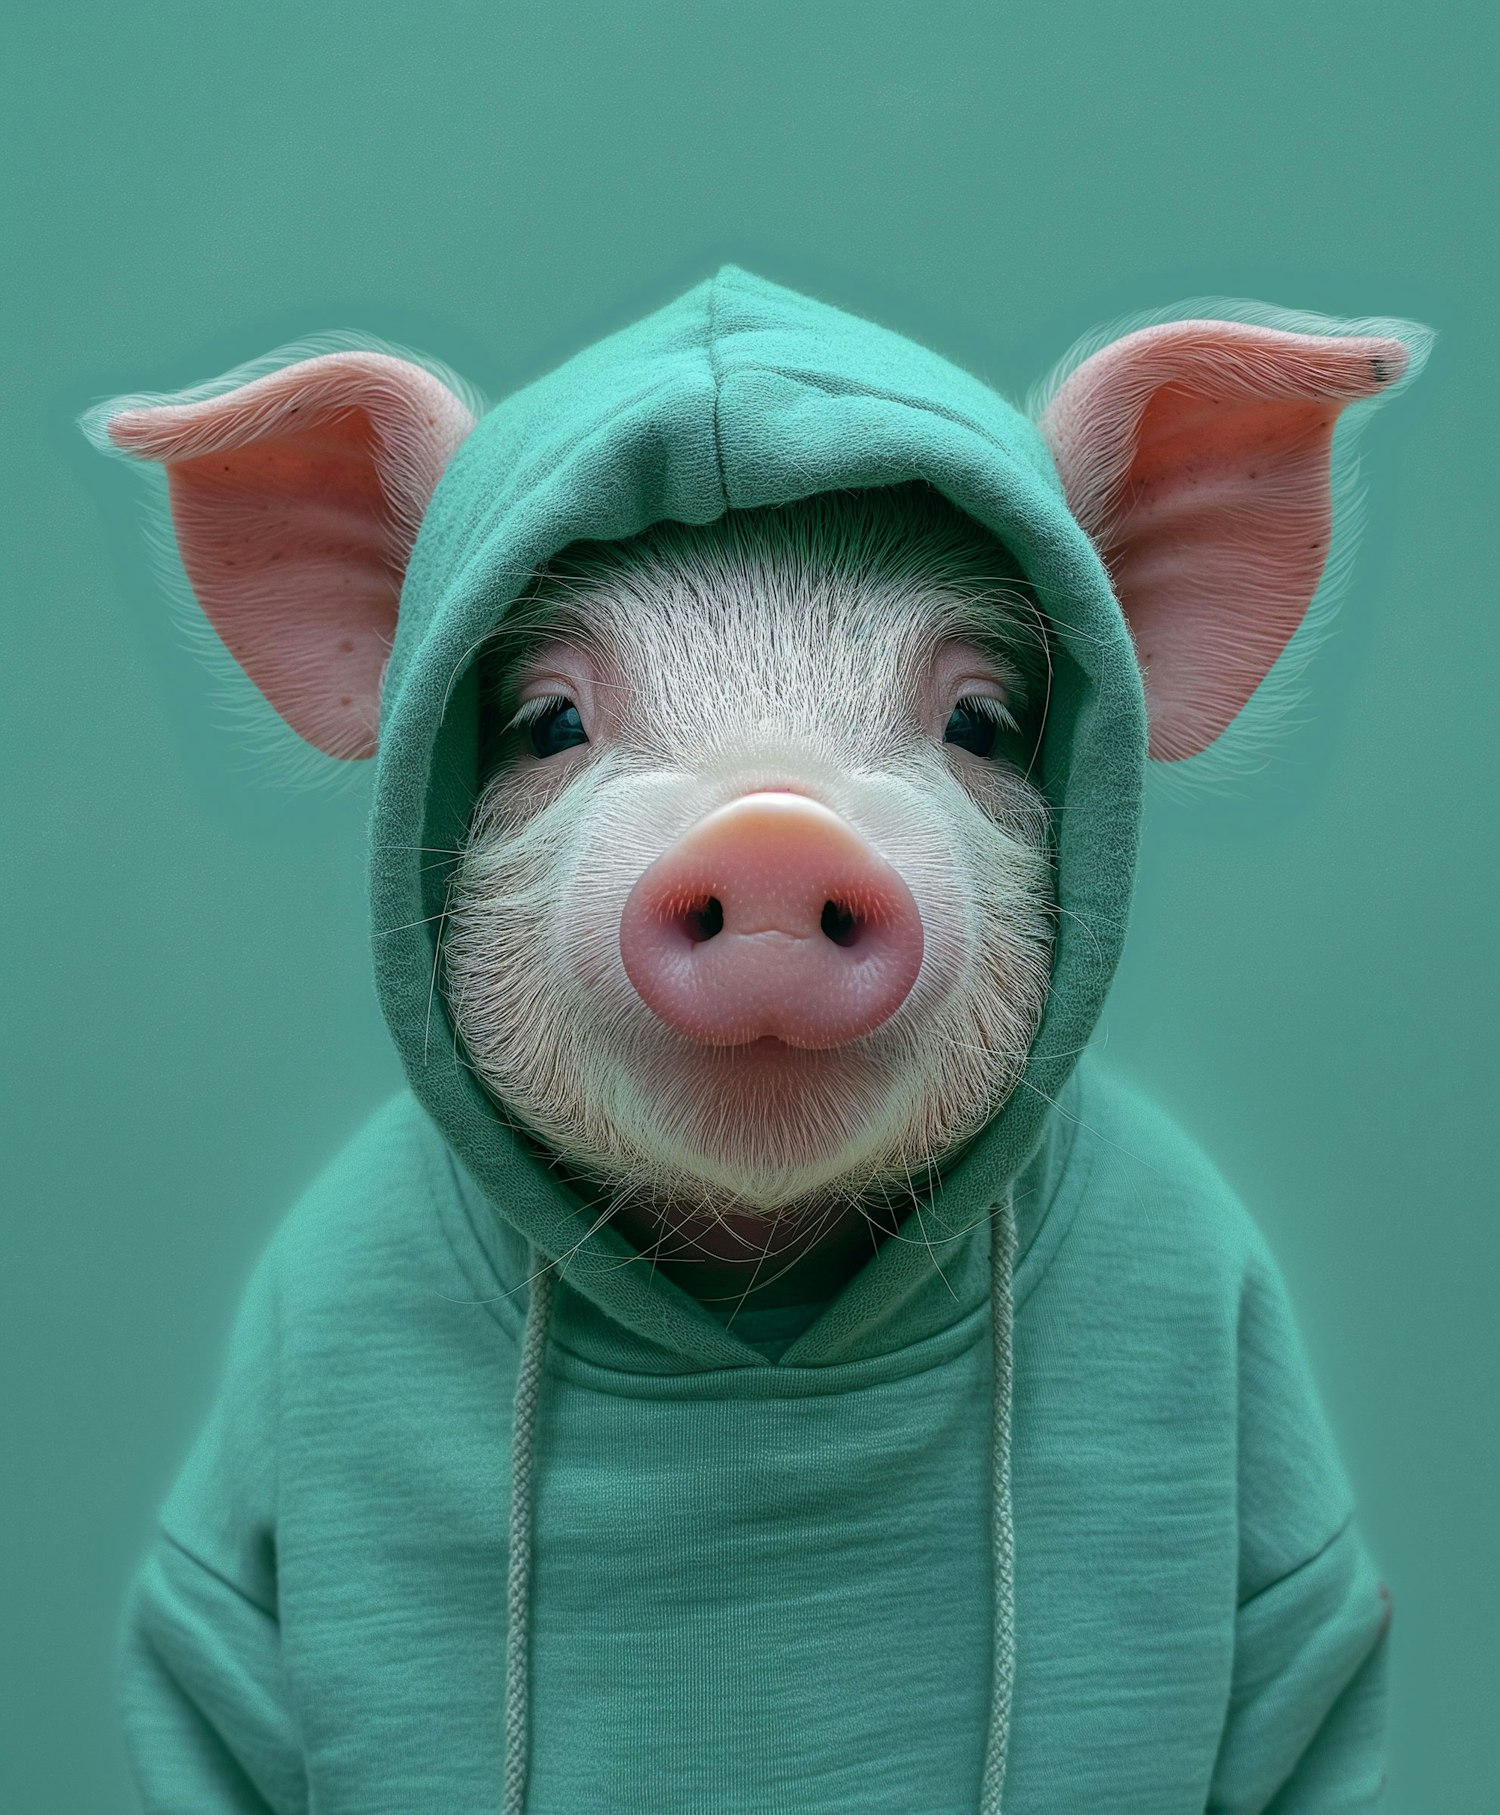 Piglet in Green Hood